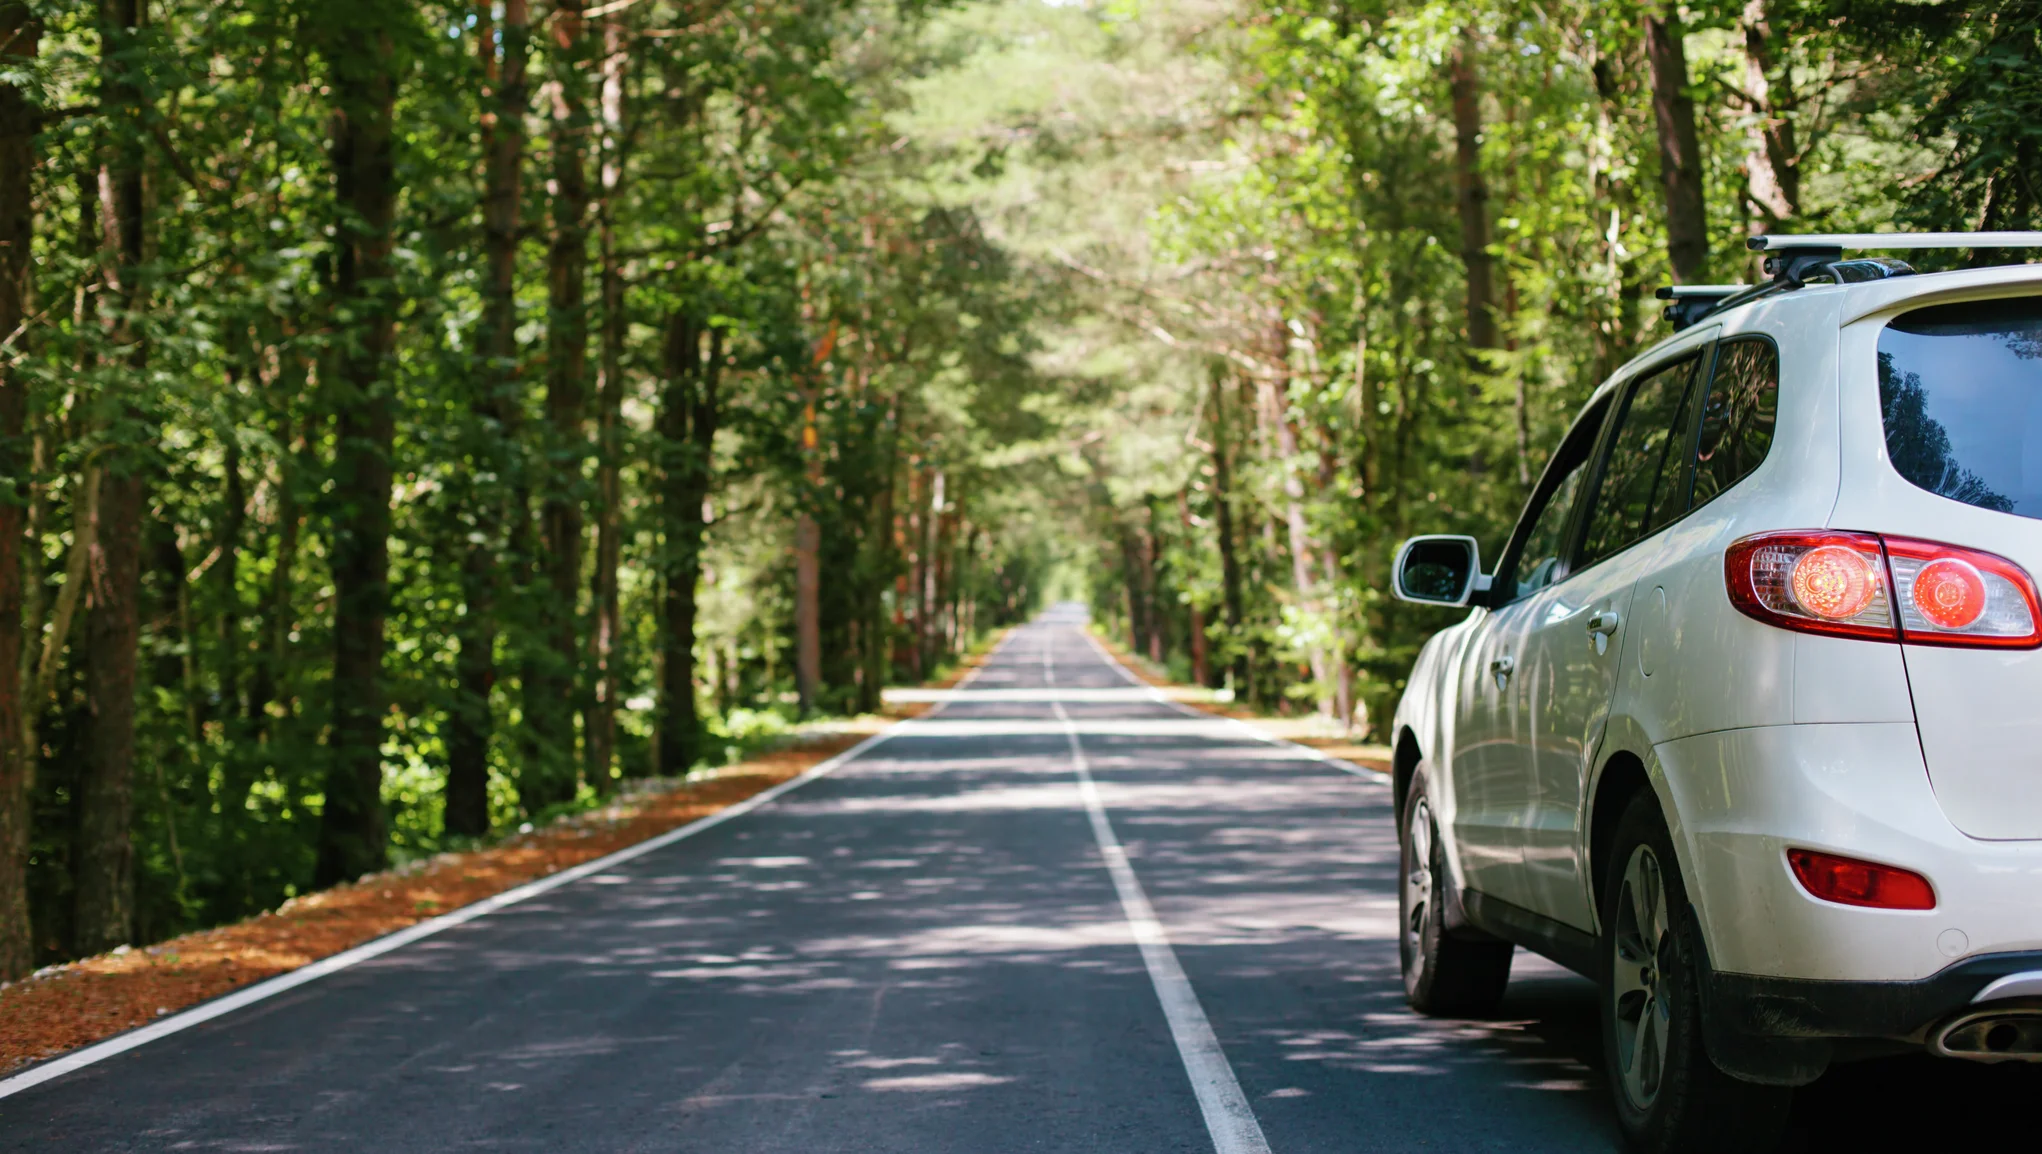 Liikluskindlustus ja kasko kaitsevad sinu toimetulekut ootamatute kuludega, kui peaksid autoga õnnetusse sattuma.